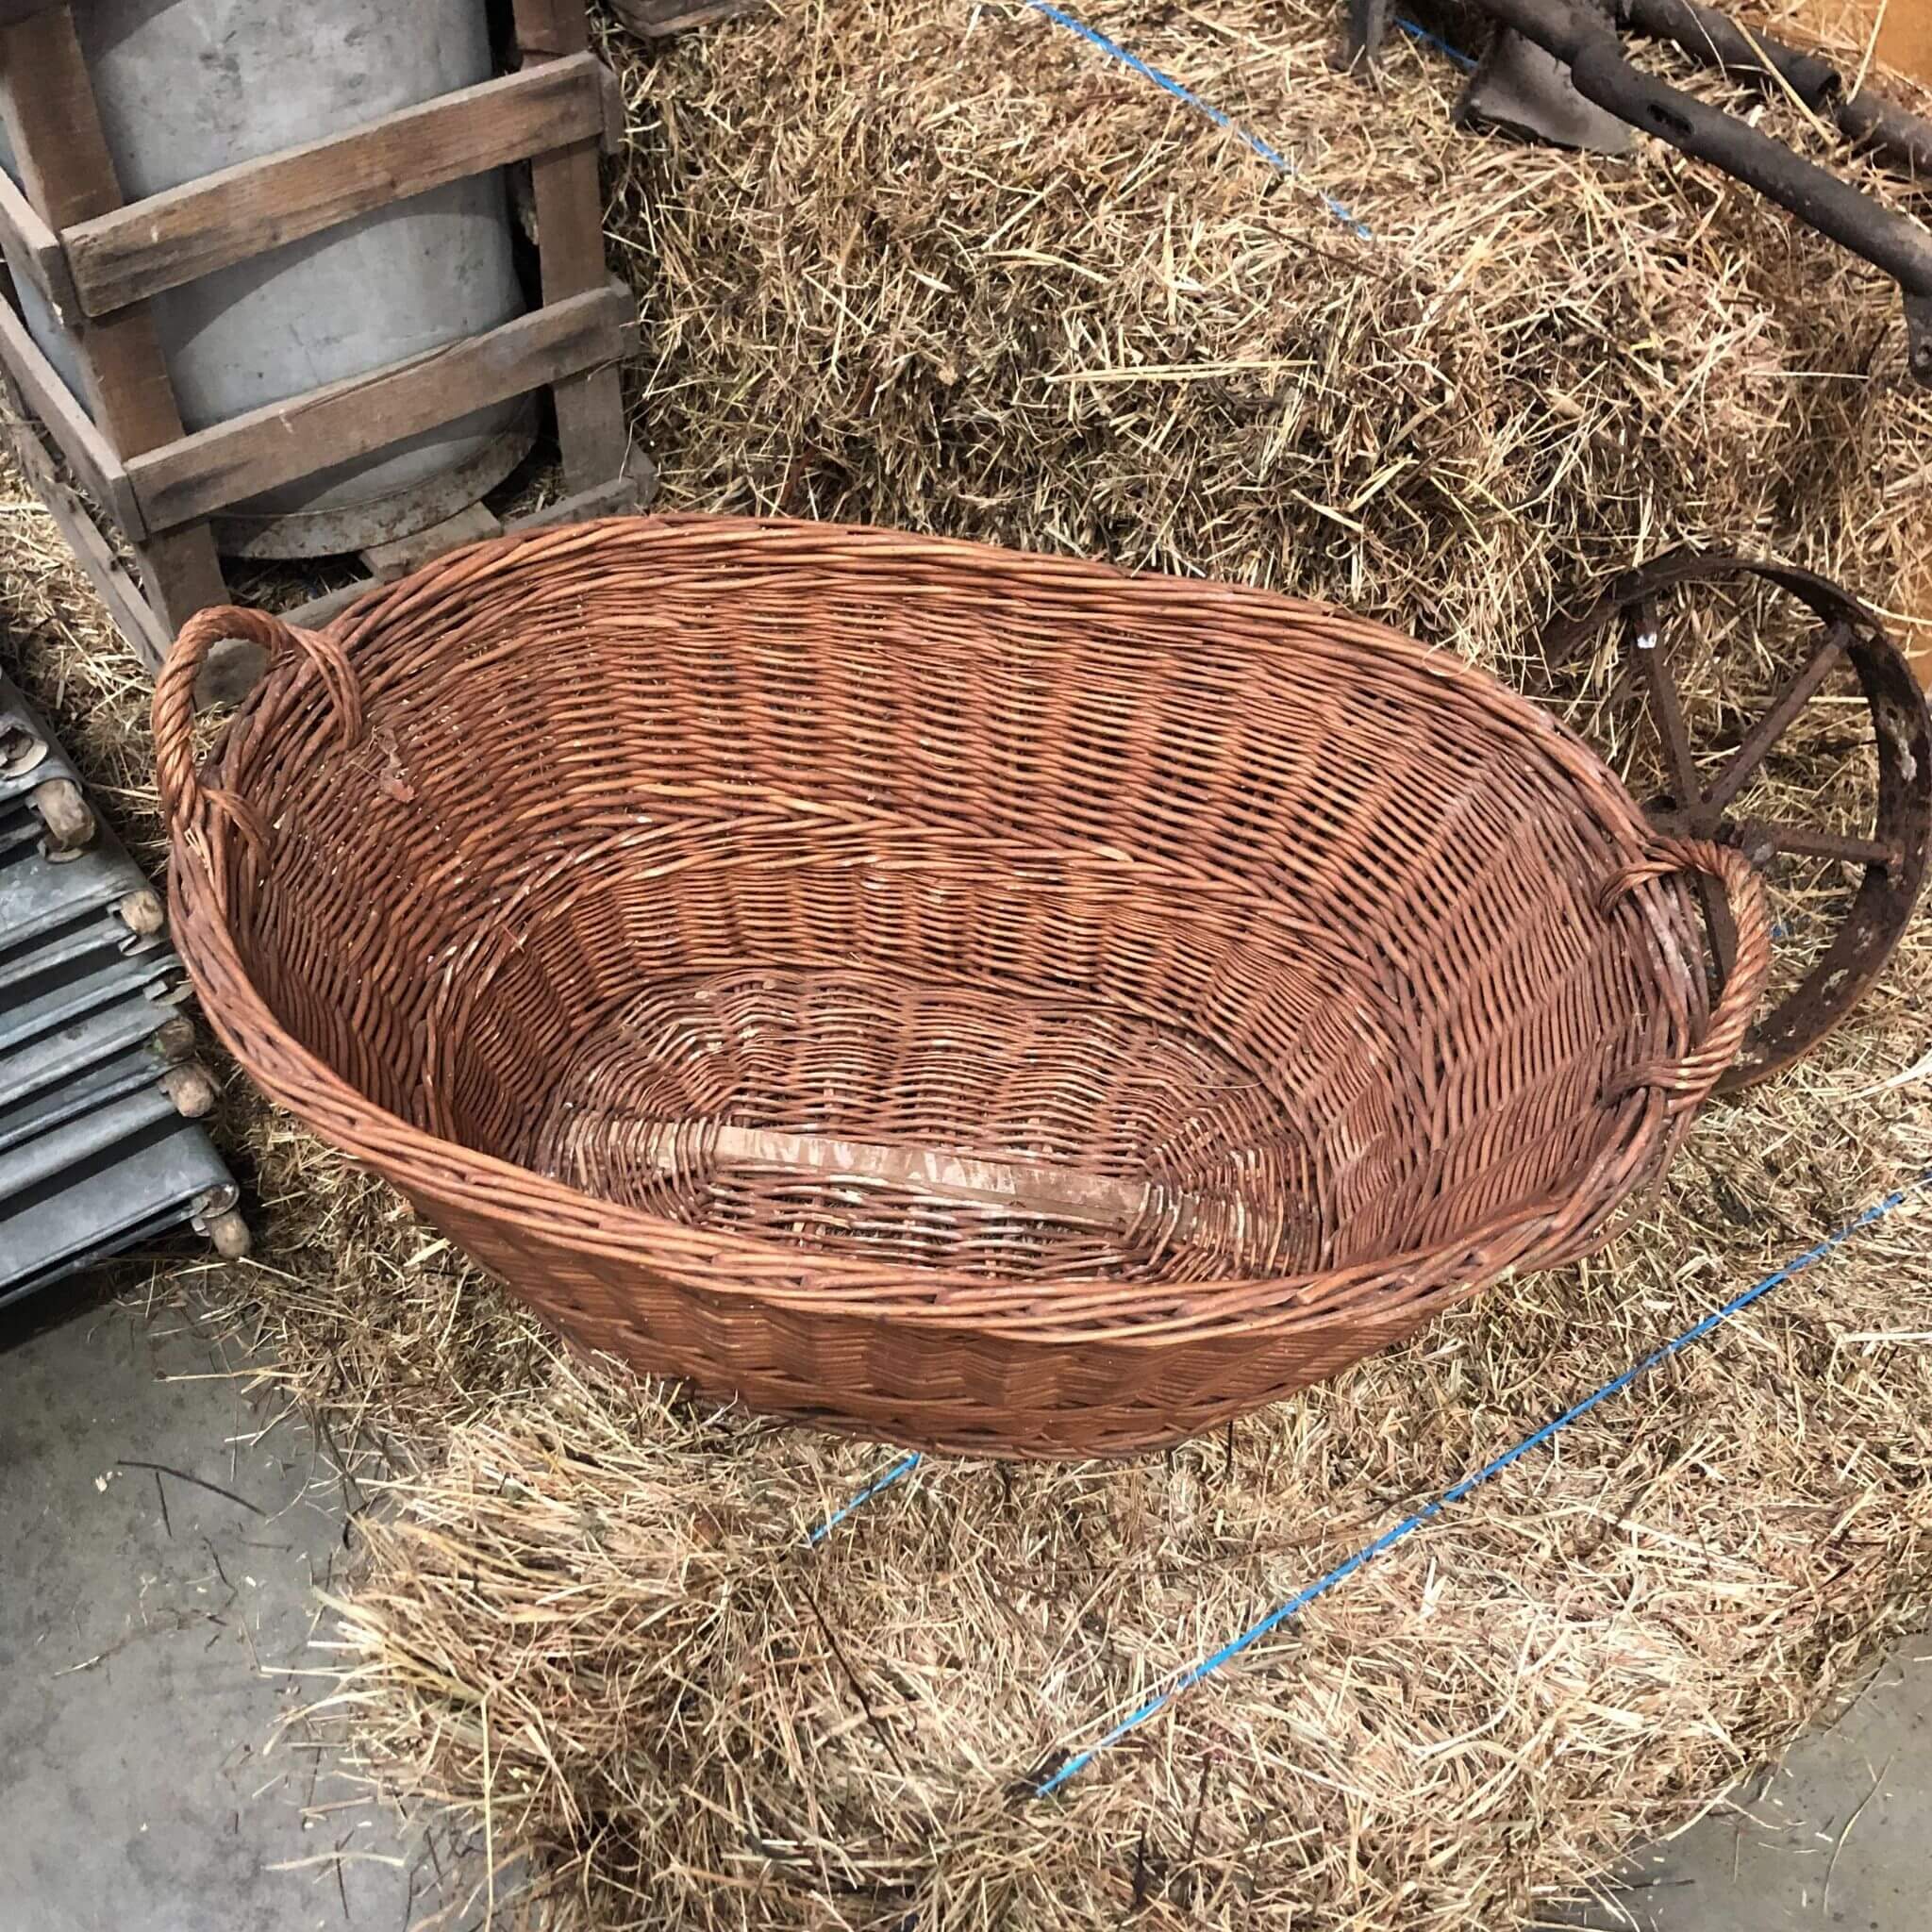 A Large Maroon Wicker Basket